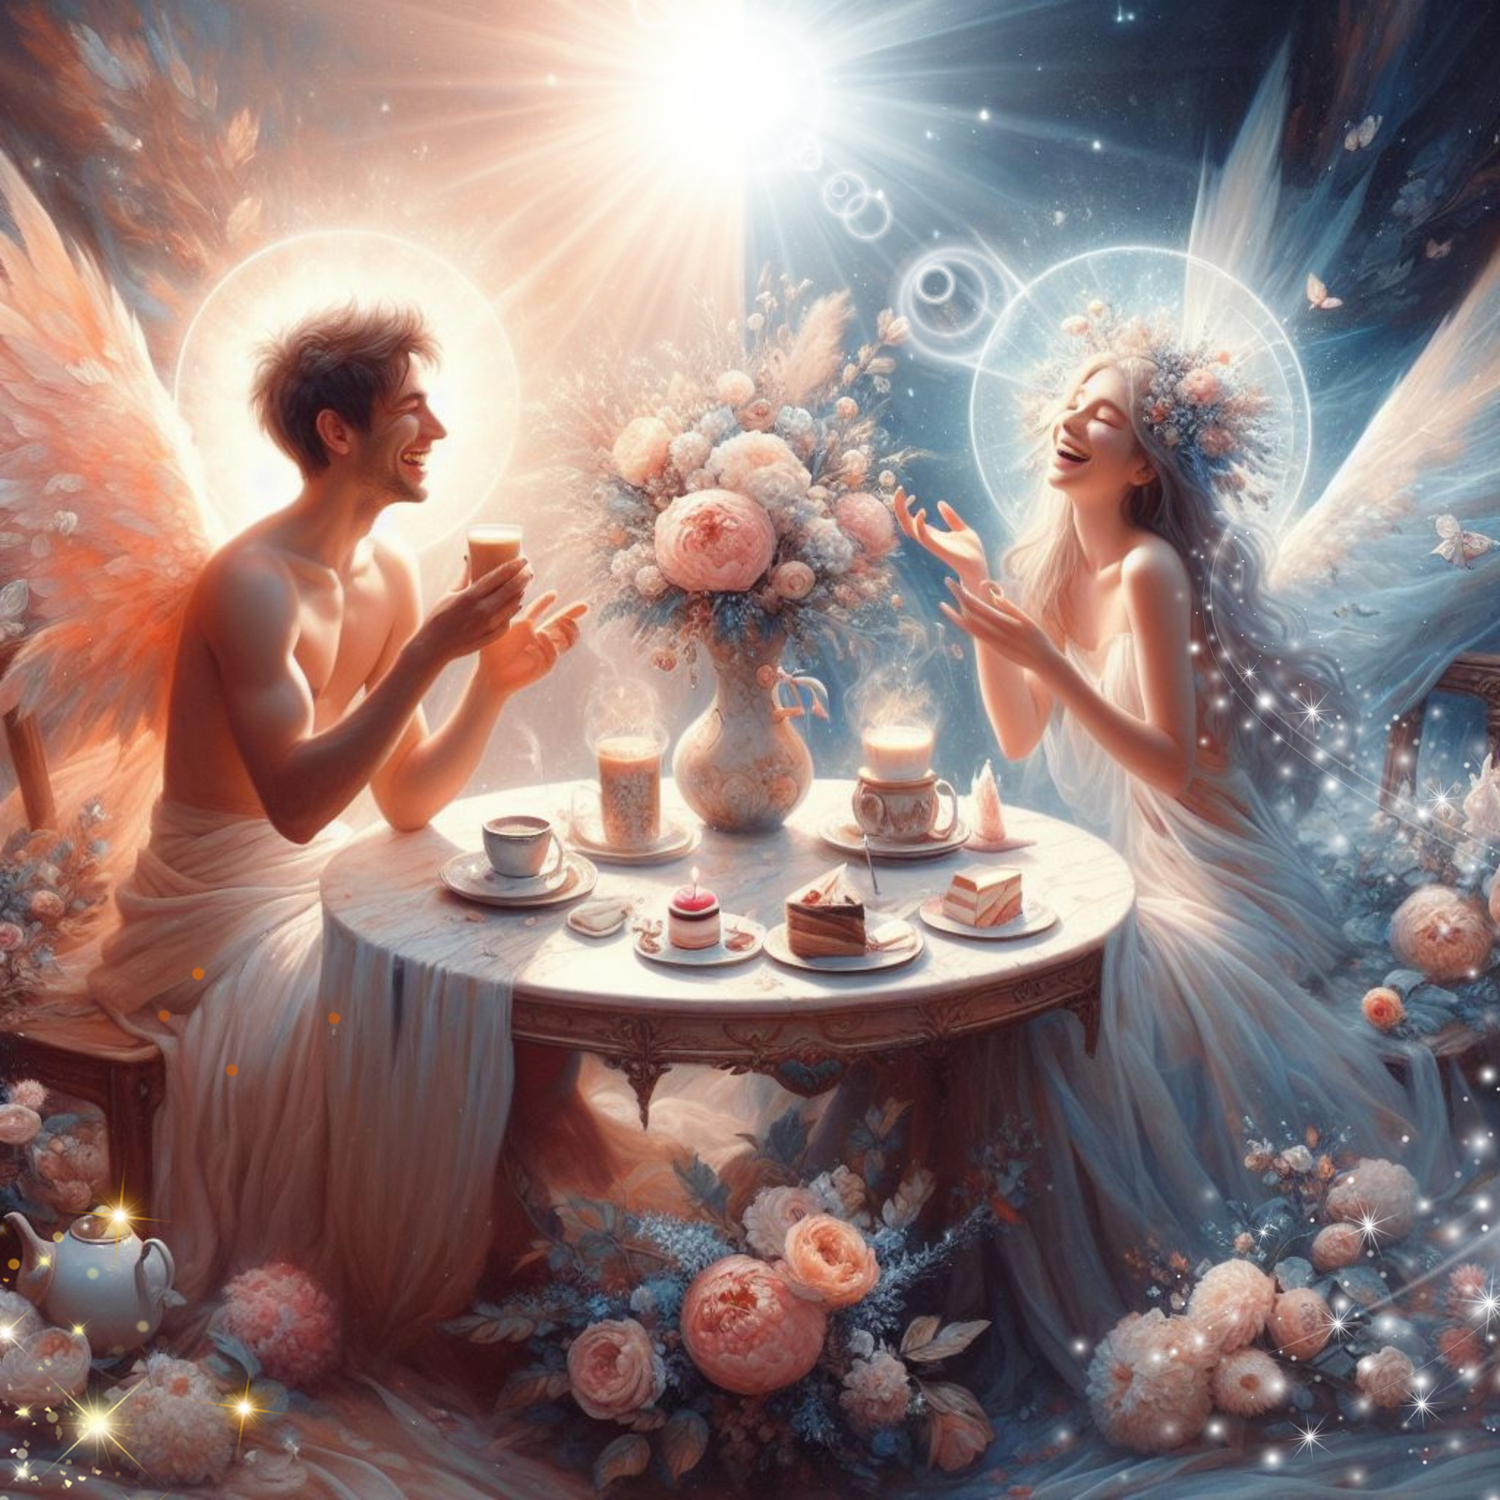 zwei Engel haben ein Rendezvous und sitzen bei Kaffee und Kuchen.